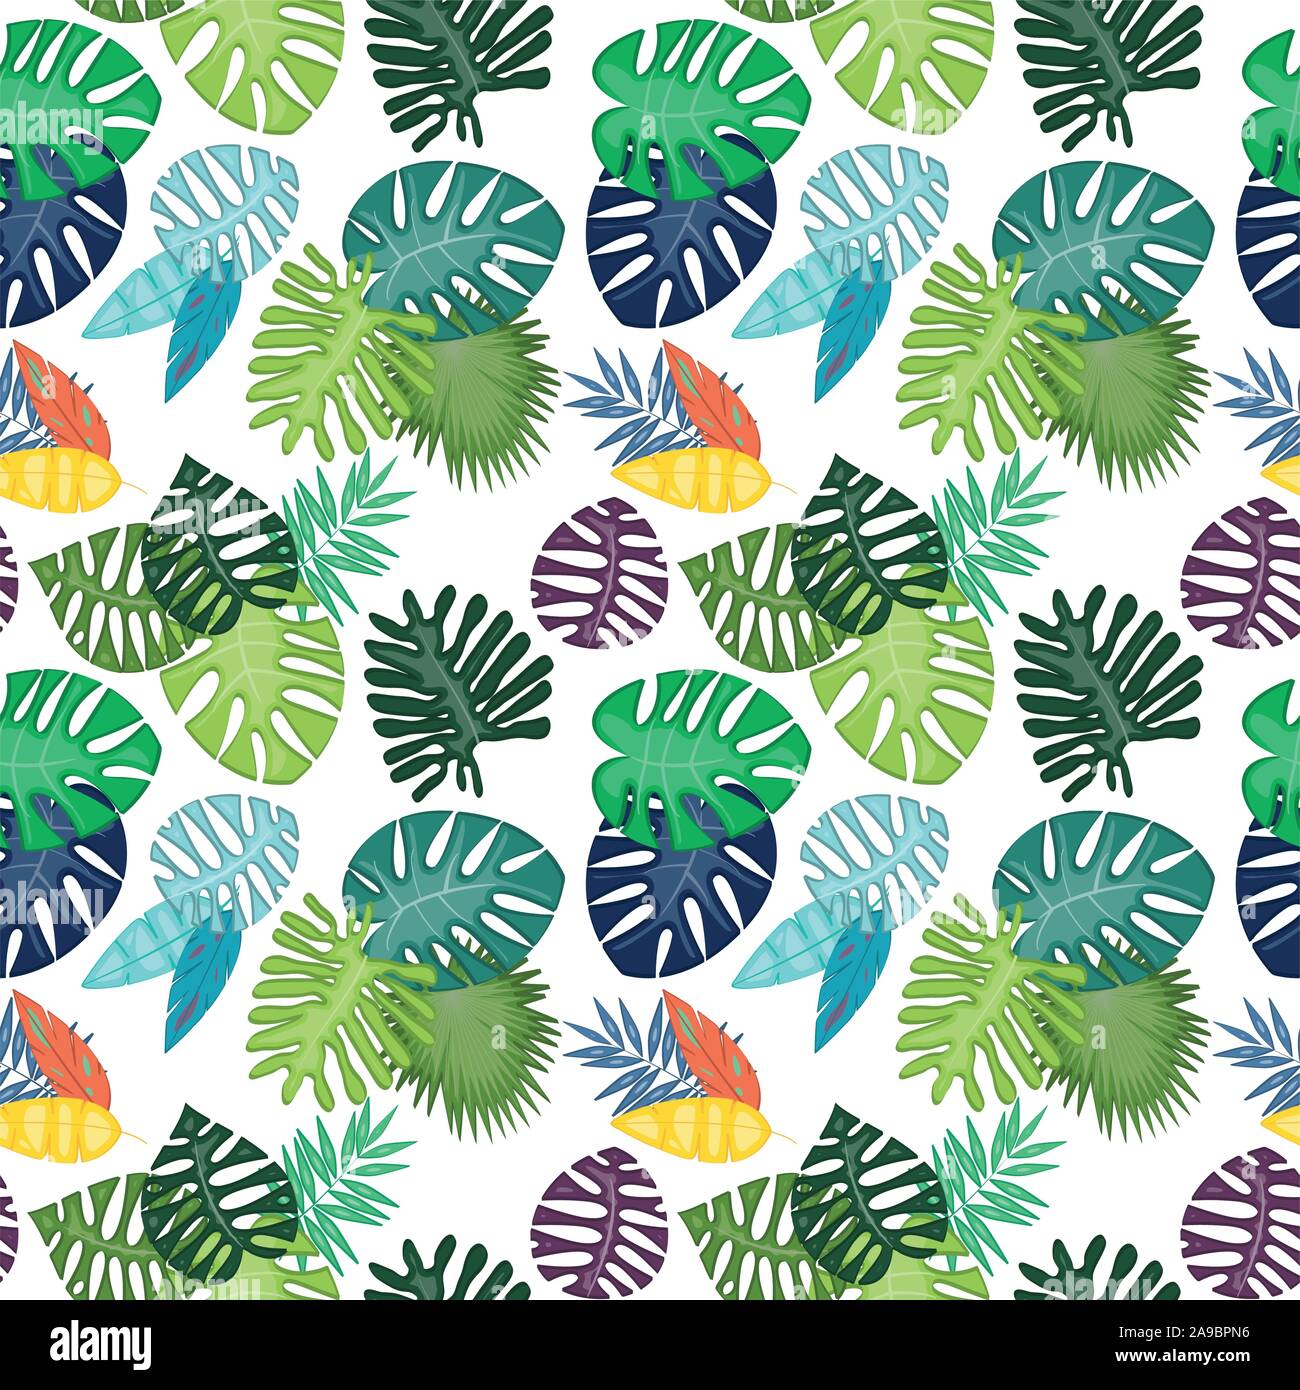 Feuille tropicale sans motif ou Background Vector Illustration de Vecteur